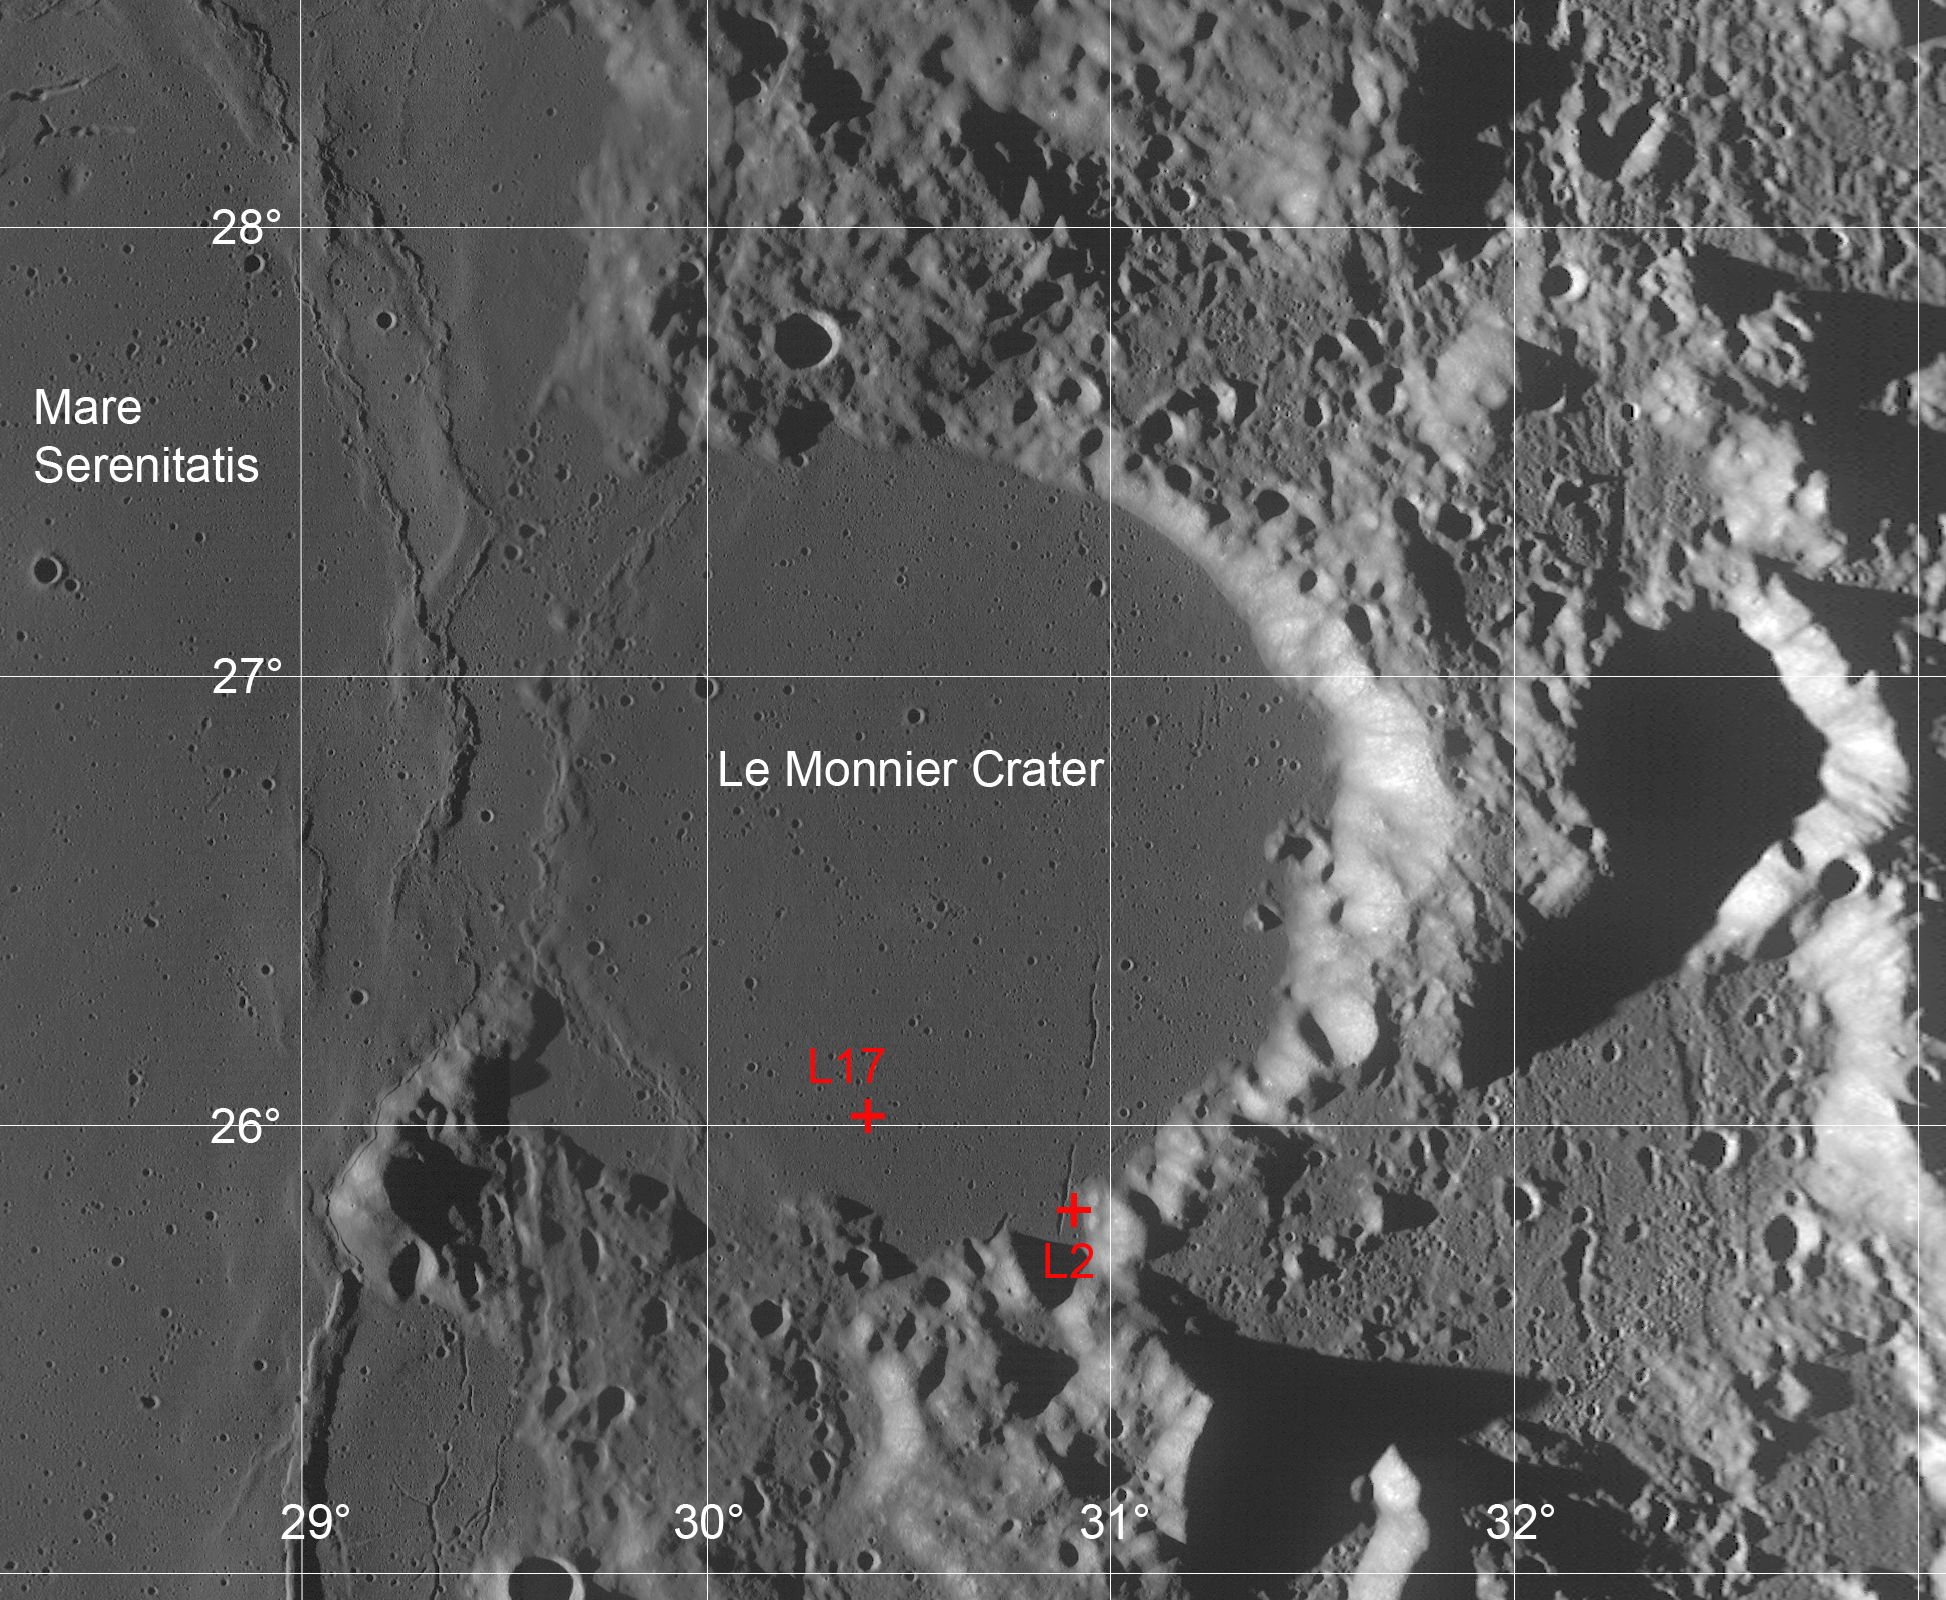 Le Monnier crater